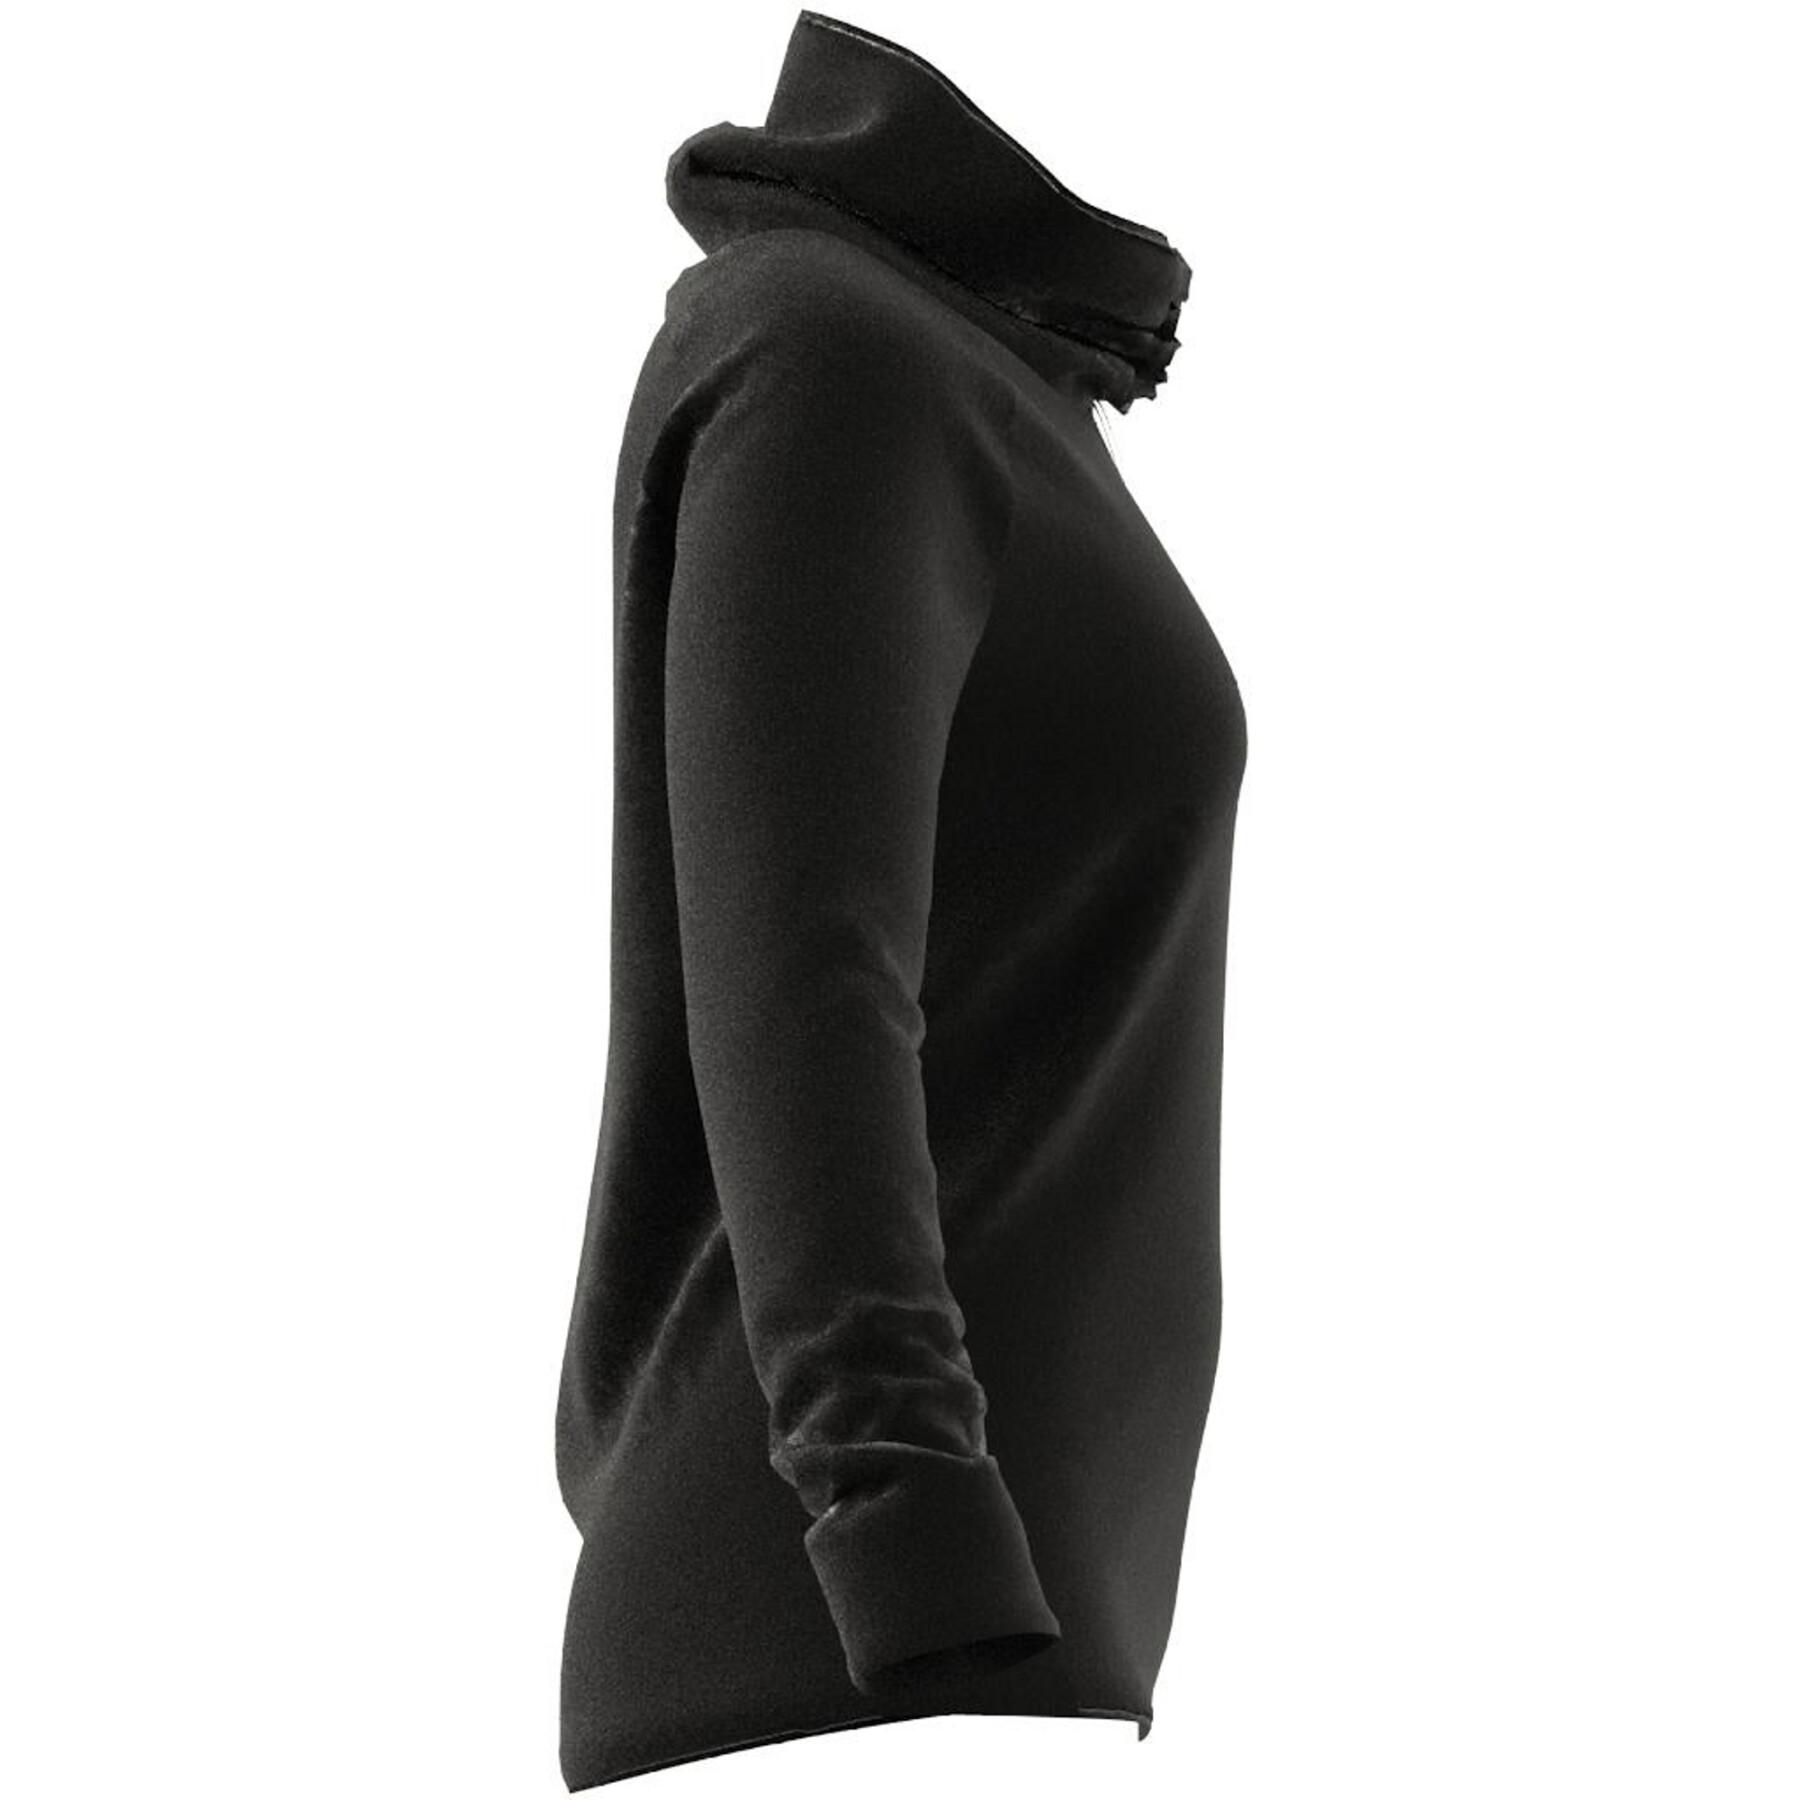 Camisola feminina de pescoço alto adidas Designed